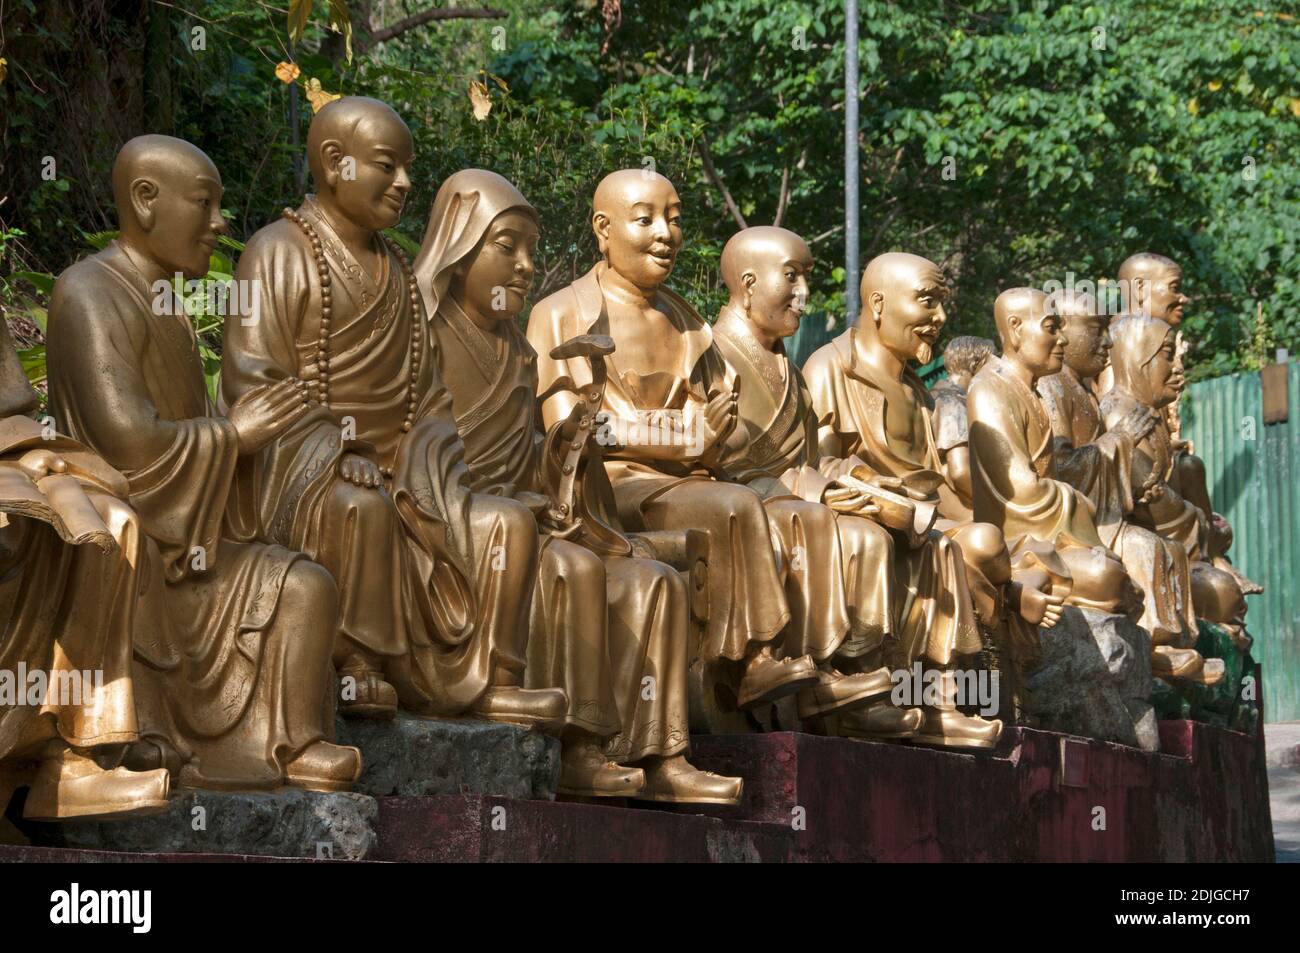 Das zehntausend Buddha Kloster in Sha Tin, New Territories, Hong Kong. Jede Buddha-Statue ist einzigartig. Mehr als 12,000 Buddha-Statuen sind in diesem Schrein in Gehweite zu einem Bahnhof zu sehen. Ernie Mastroianni Foto. Stockfoto